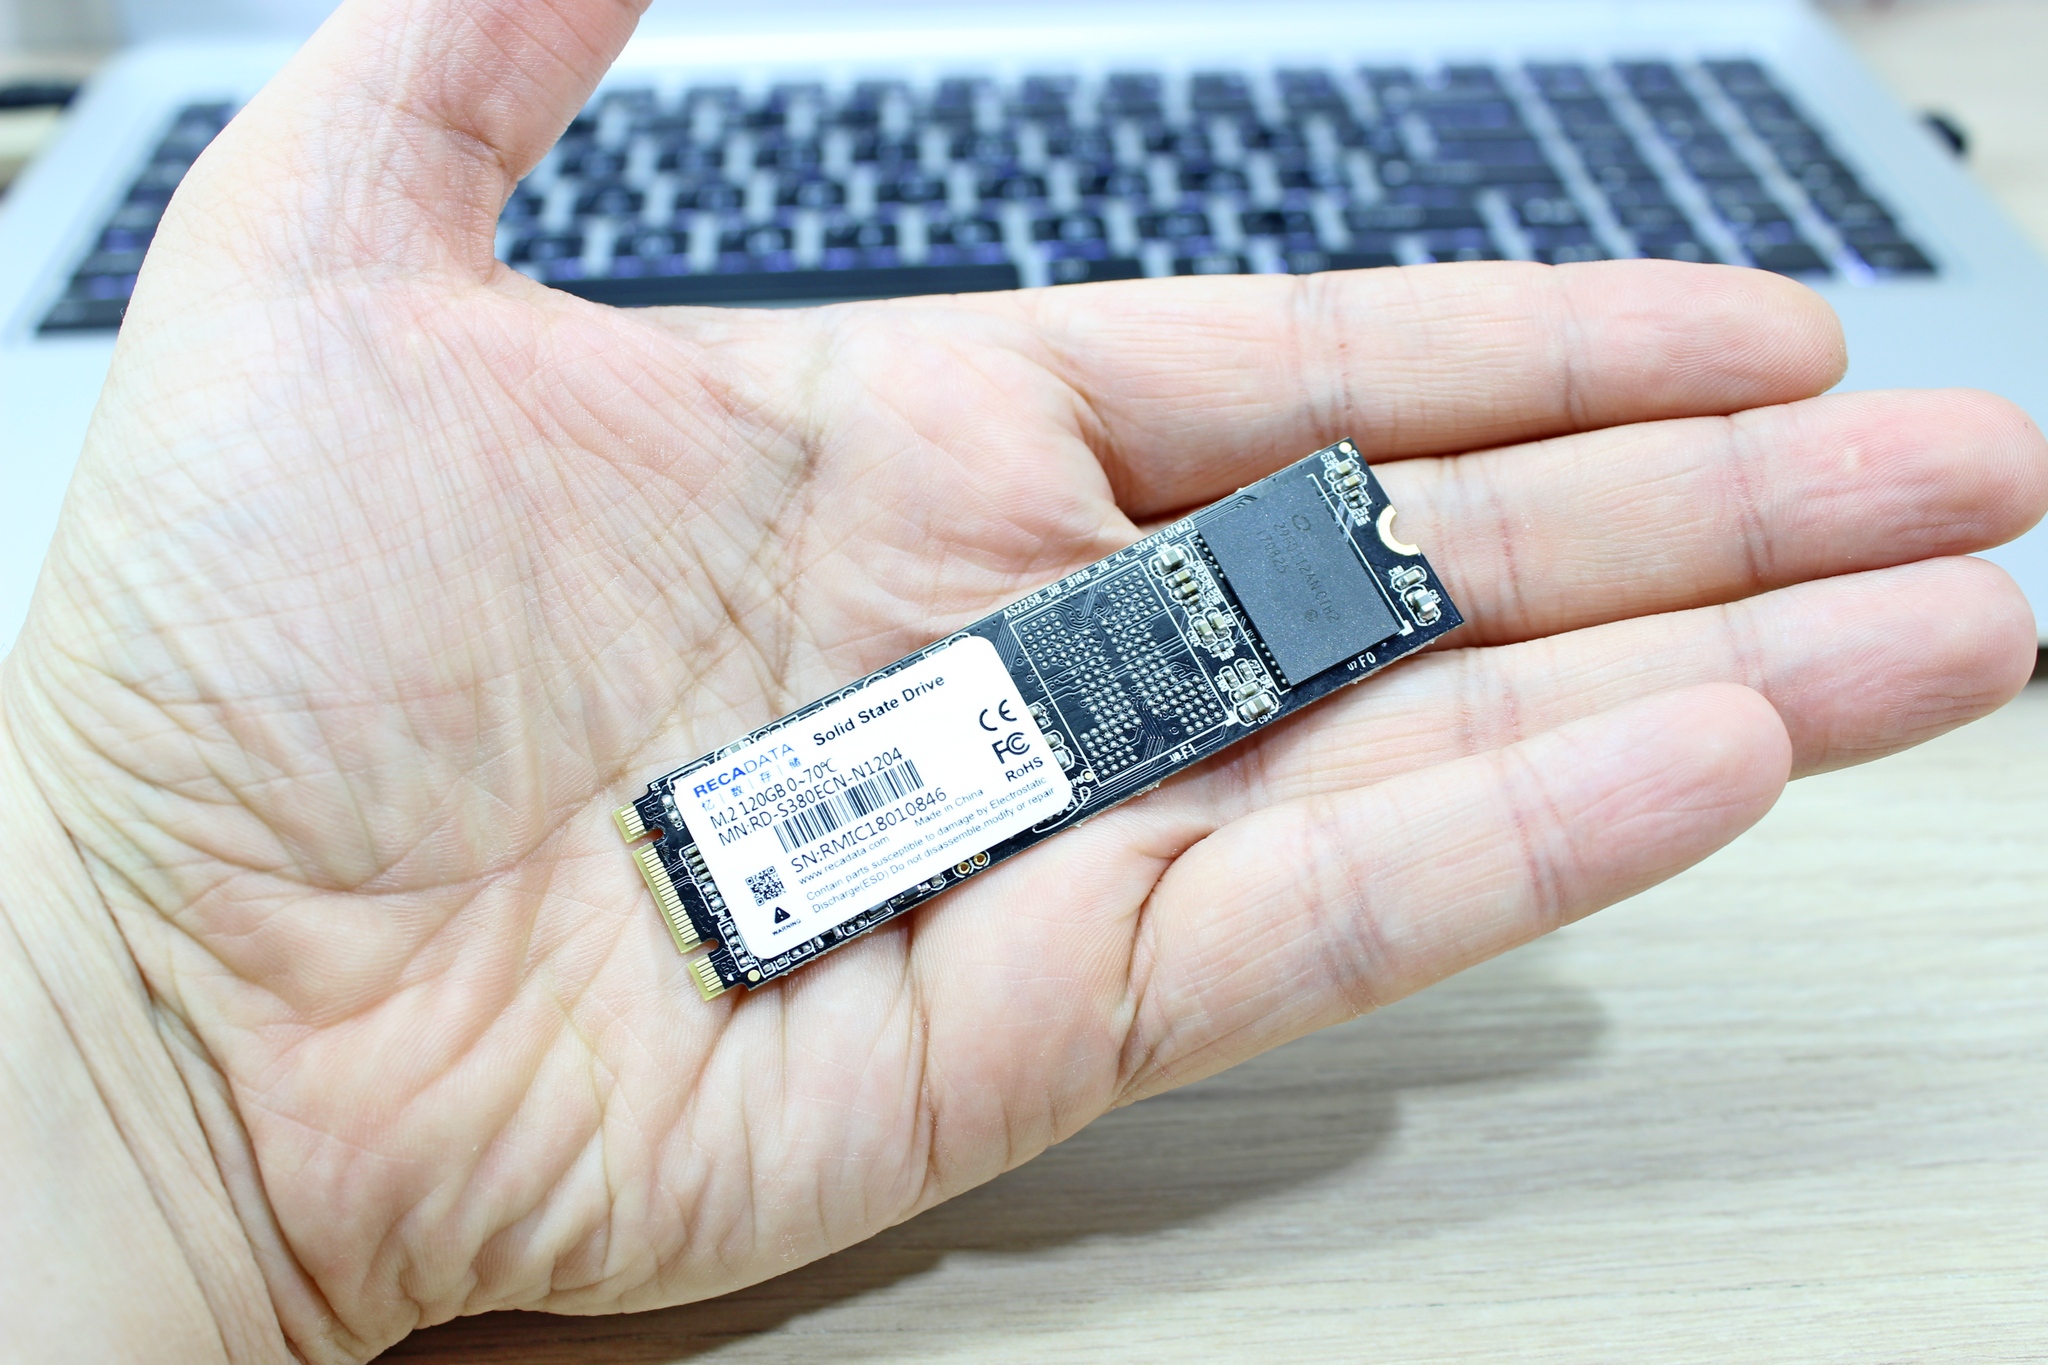 Чип памяти ssd. Чипы памяти SSD. 2dl чип памяти. SSD диск флешка. SSD диск m2 c радиатором.